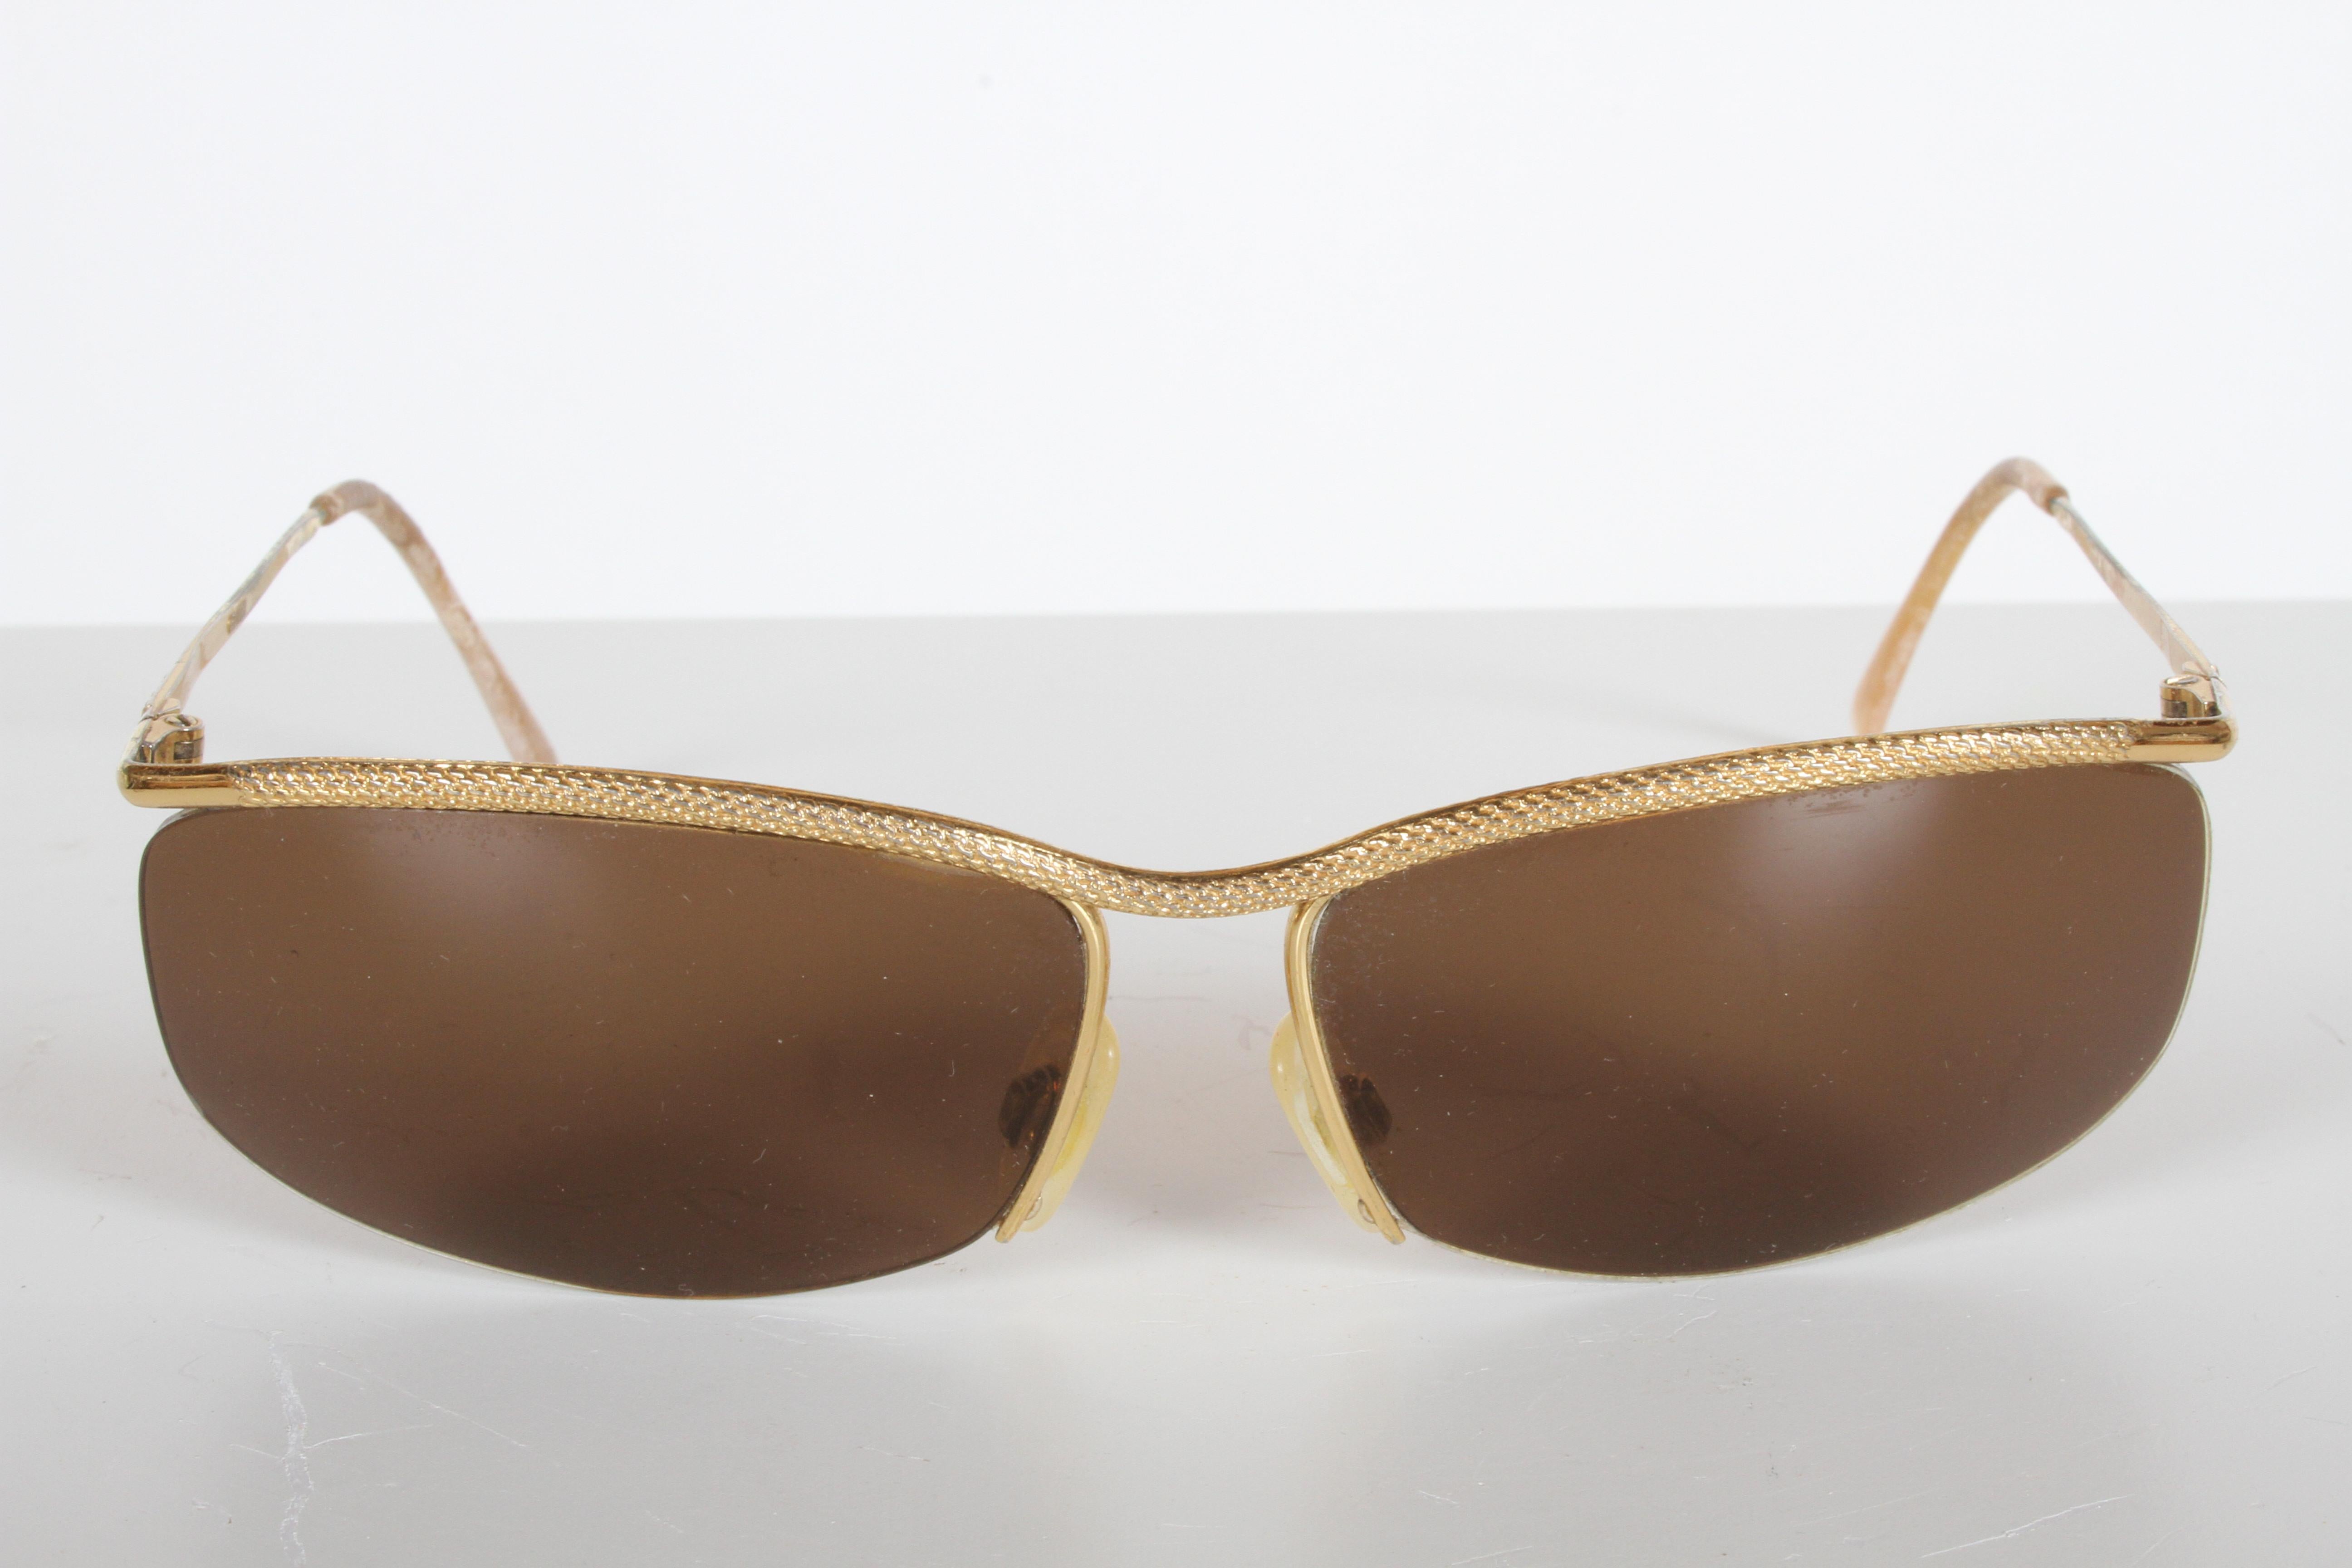 Klassische Gucci-Sonnenbrille aus den 1970er Jahren mit 22-karätigem Goldüberzug und braunen Kunststoffgläsern, mit schöner Rändelstruktur auf der Vorderseite des Rahmens. Einige Abnutzungserscheinungen an der Vergoldung, auch an den Ohrstücken.